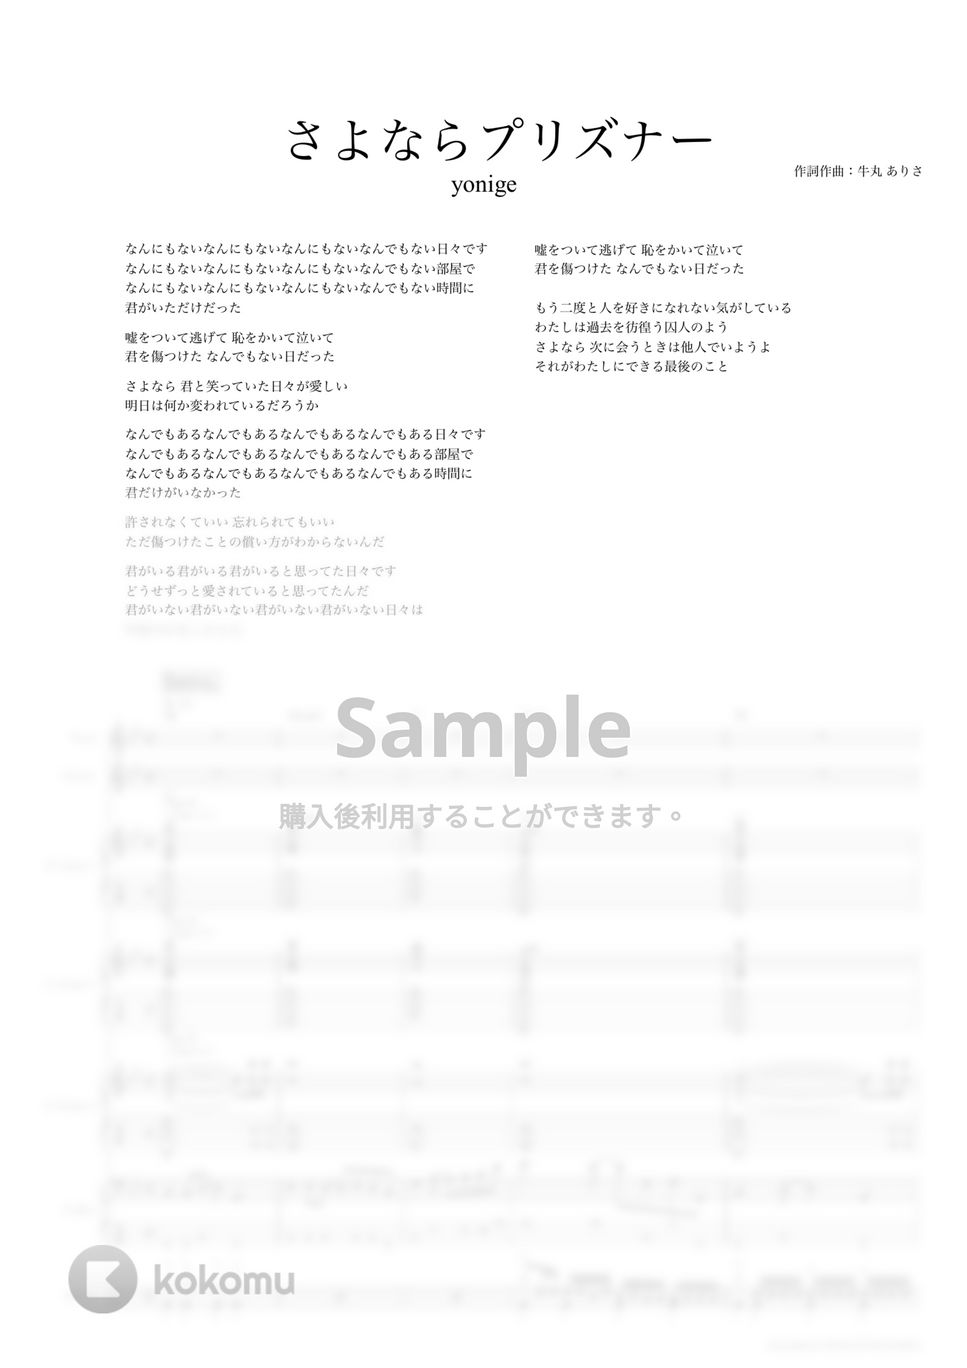 yonige - さよならプリズナー (バンドスコア) by TRIAD GUITAR SCHOOL